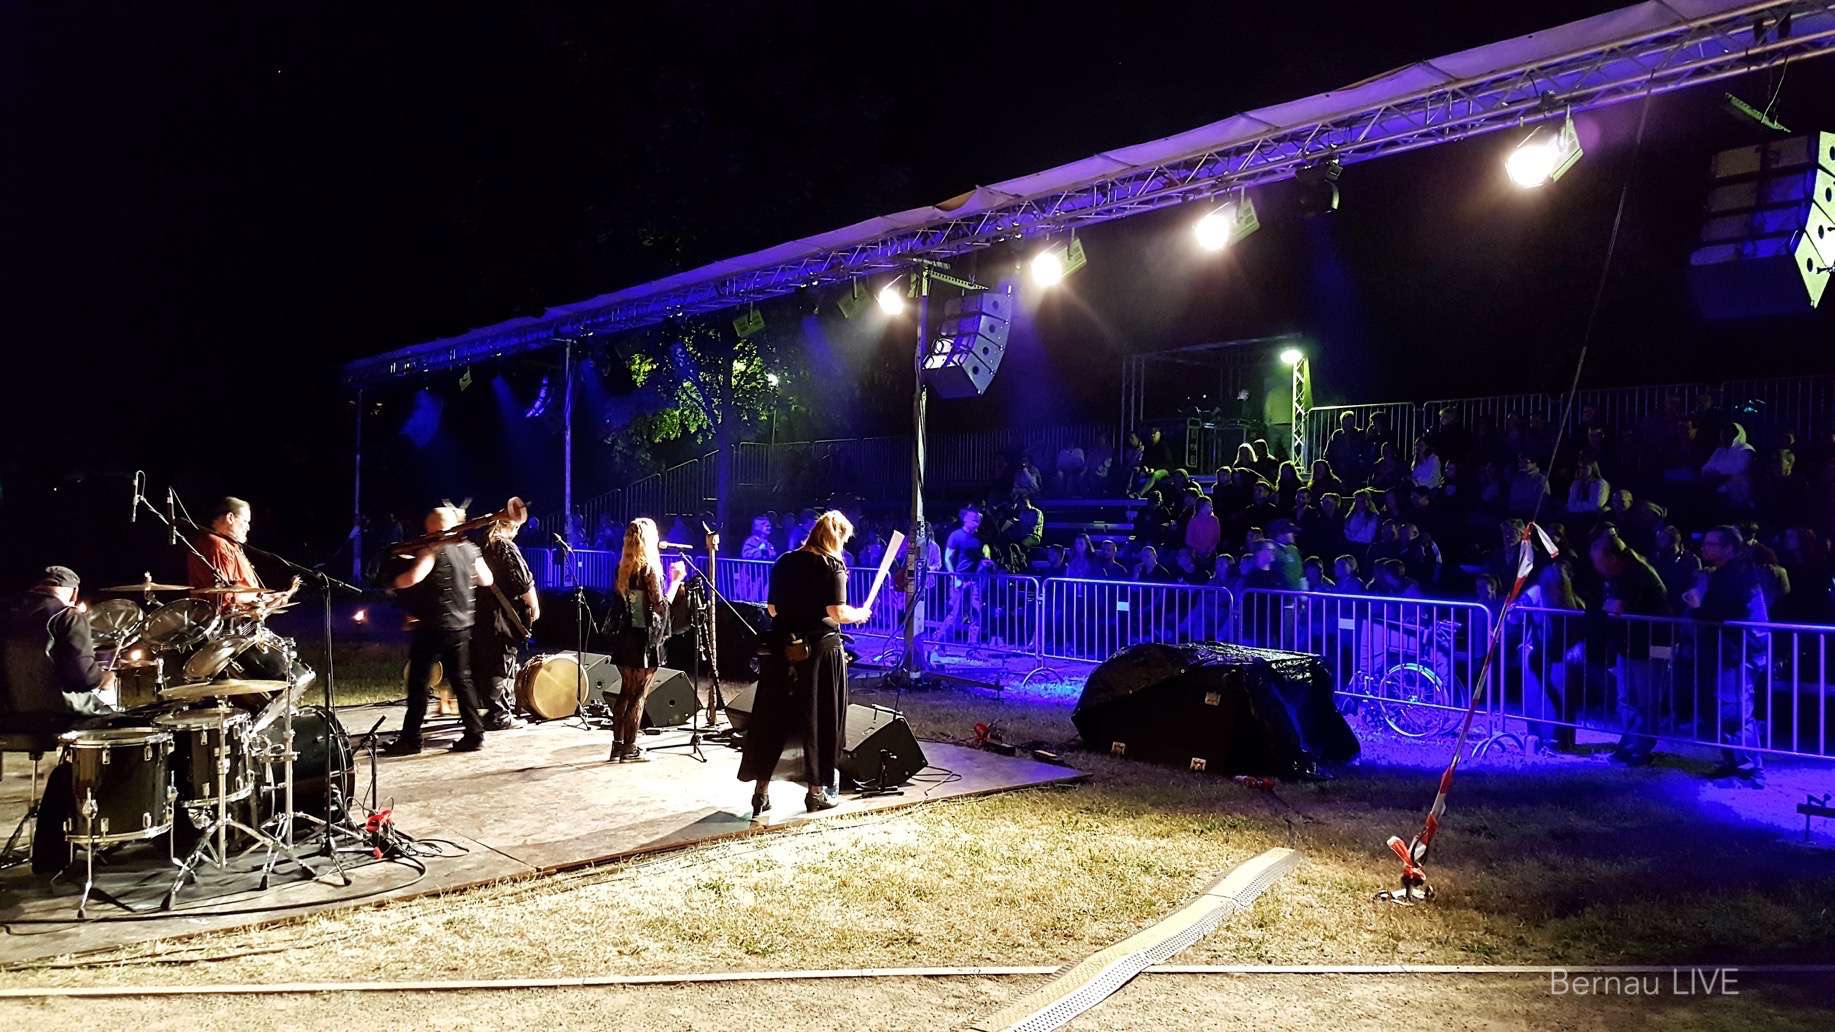 Hussitenfest Bernau - Bilder zur Nacht